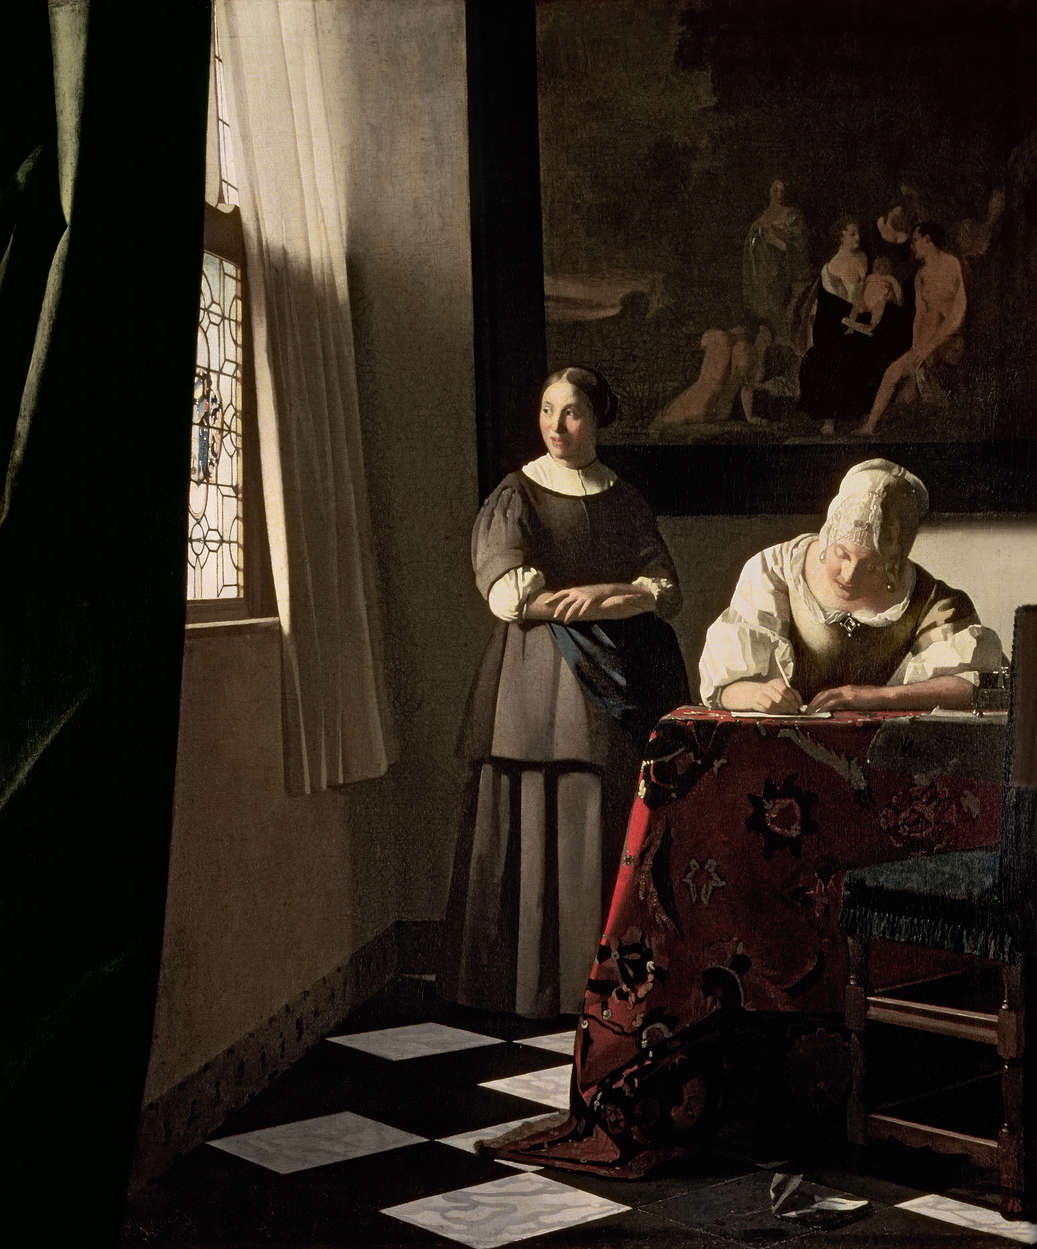             Fotomurali "Signora che scrive una lettera con la cameriera" di Jan Vermeer
        